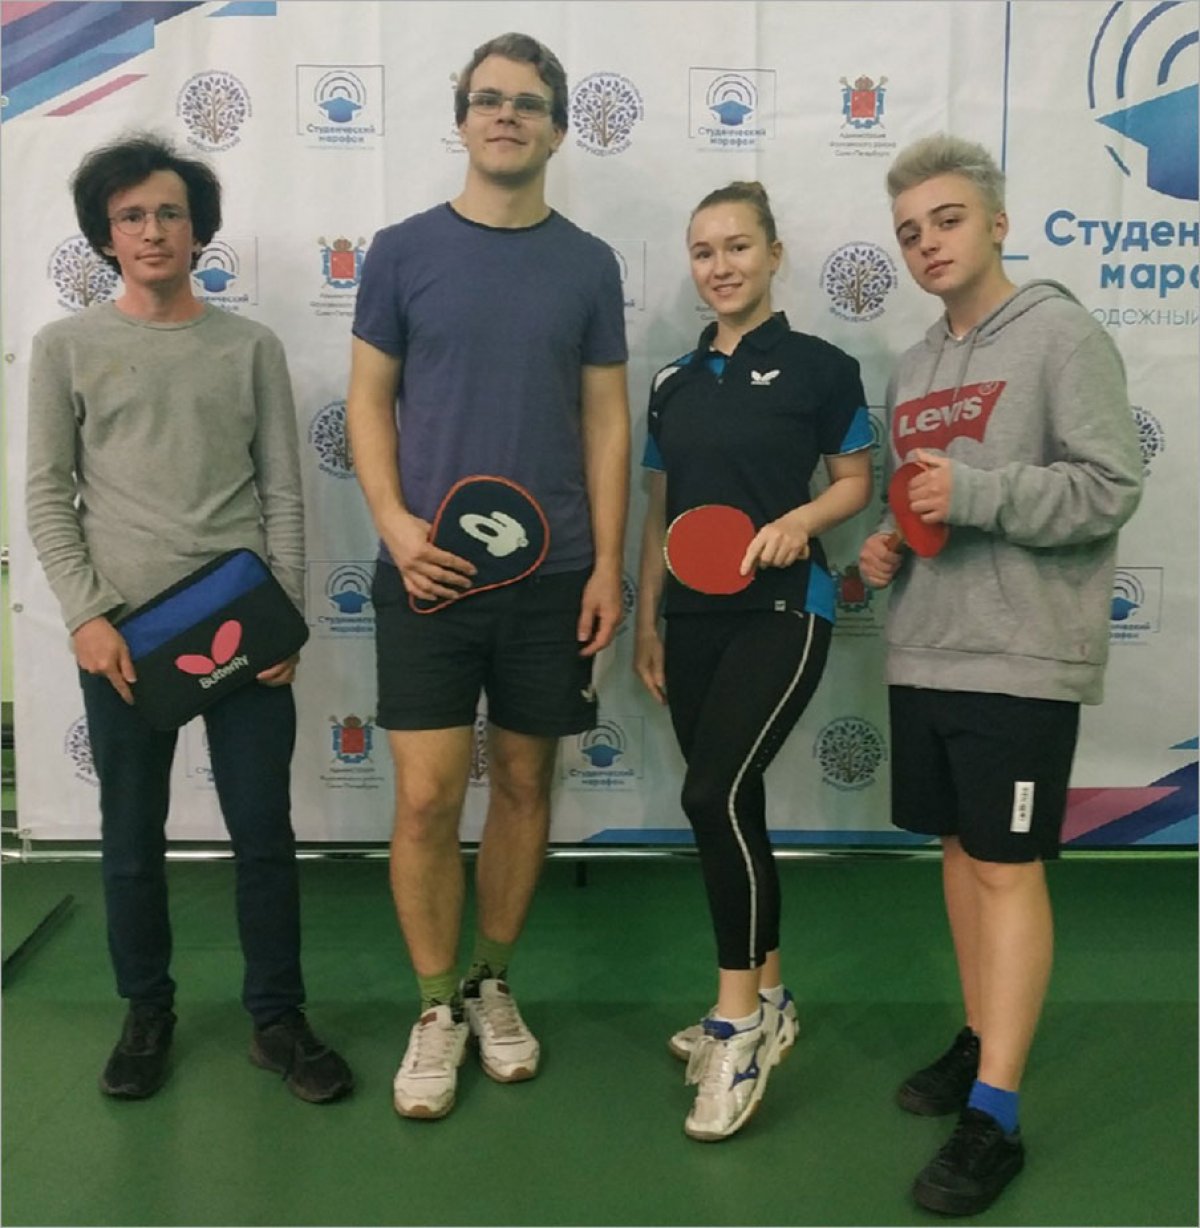 Студенты СПбГУП – победители и призеры молодежного фестиваля «Студенческий марафон» по настольному теннису и пулевой стрельбе